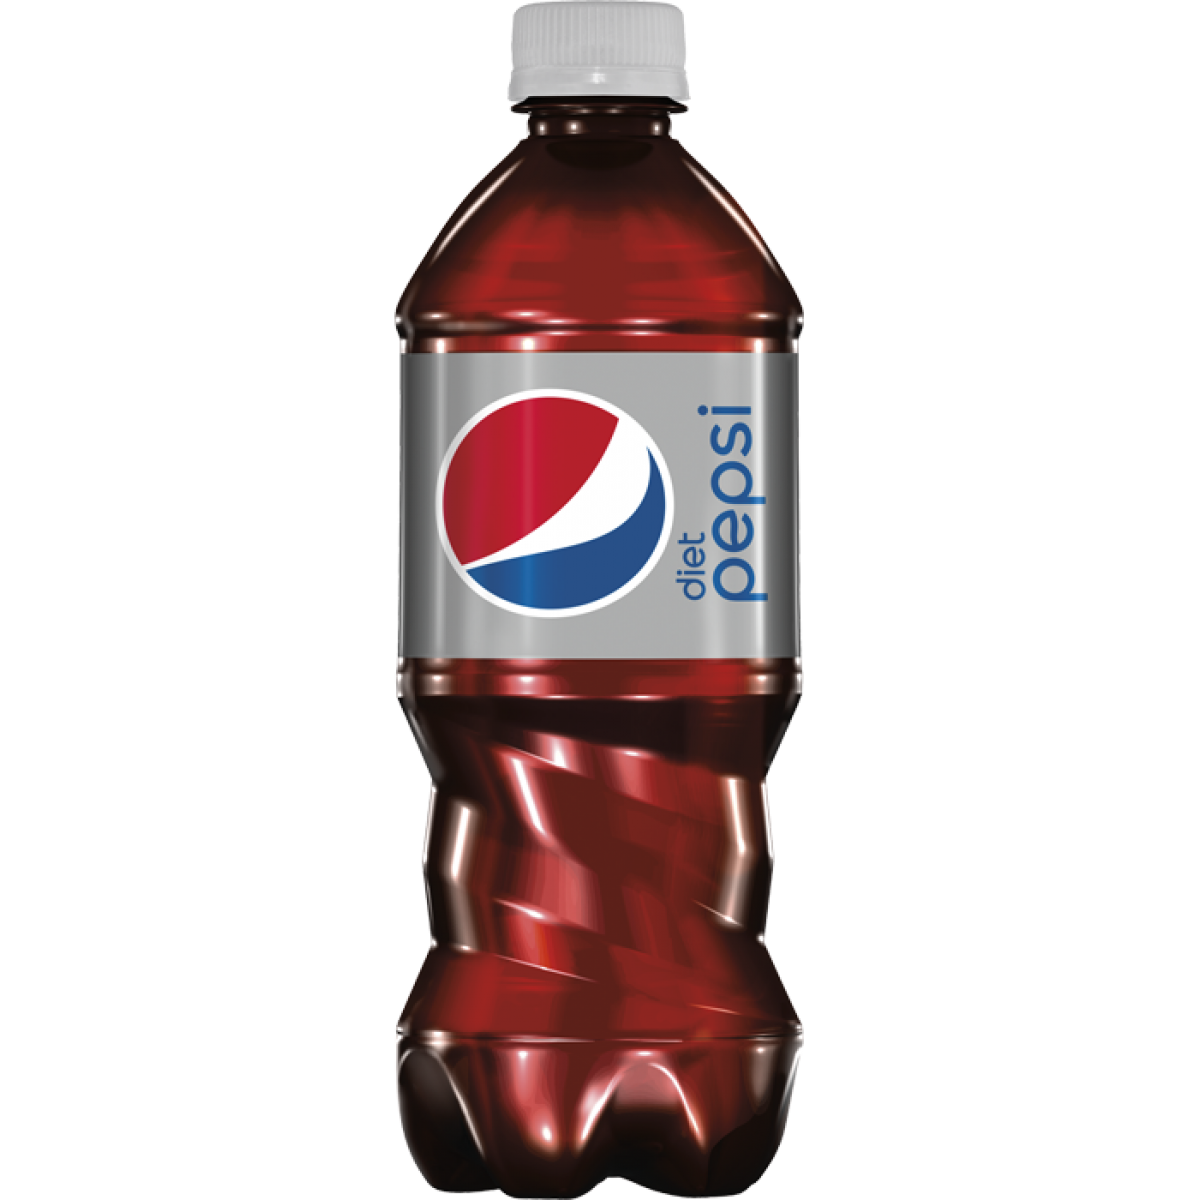 Sebotol besar Pepsi